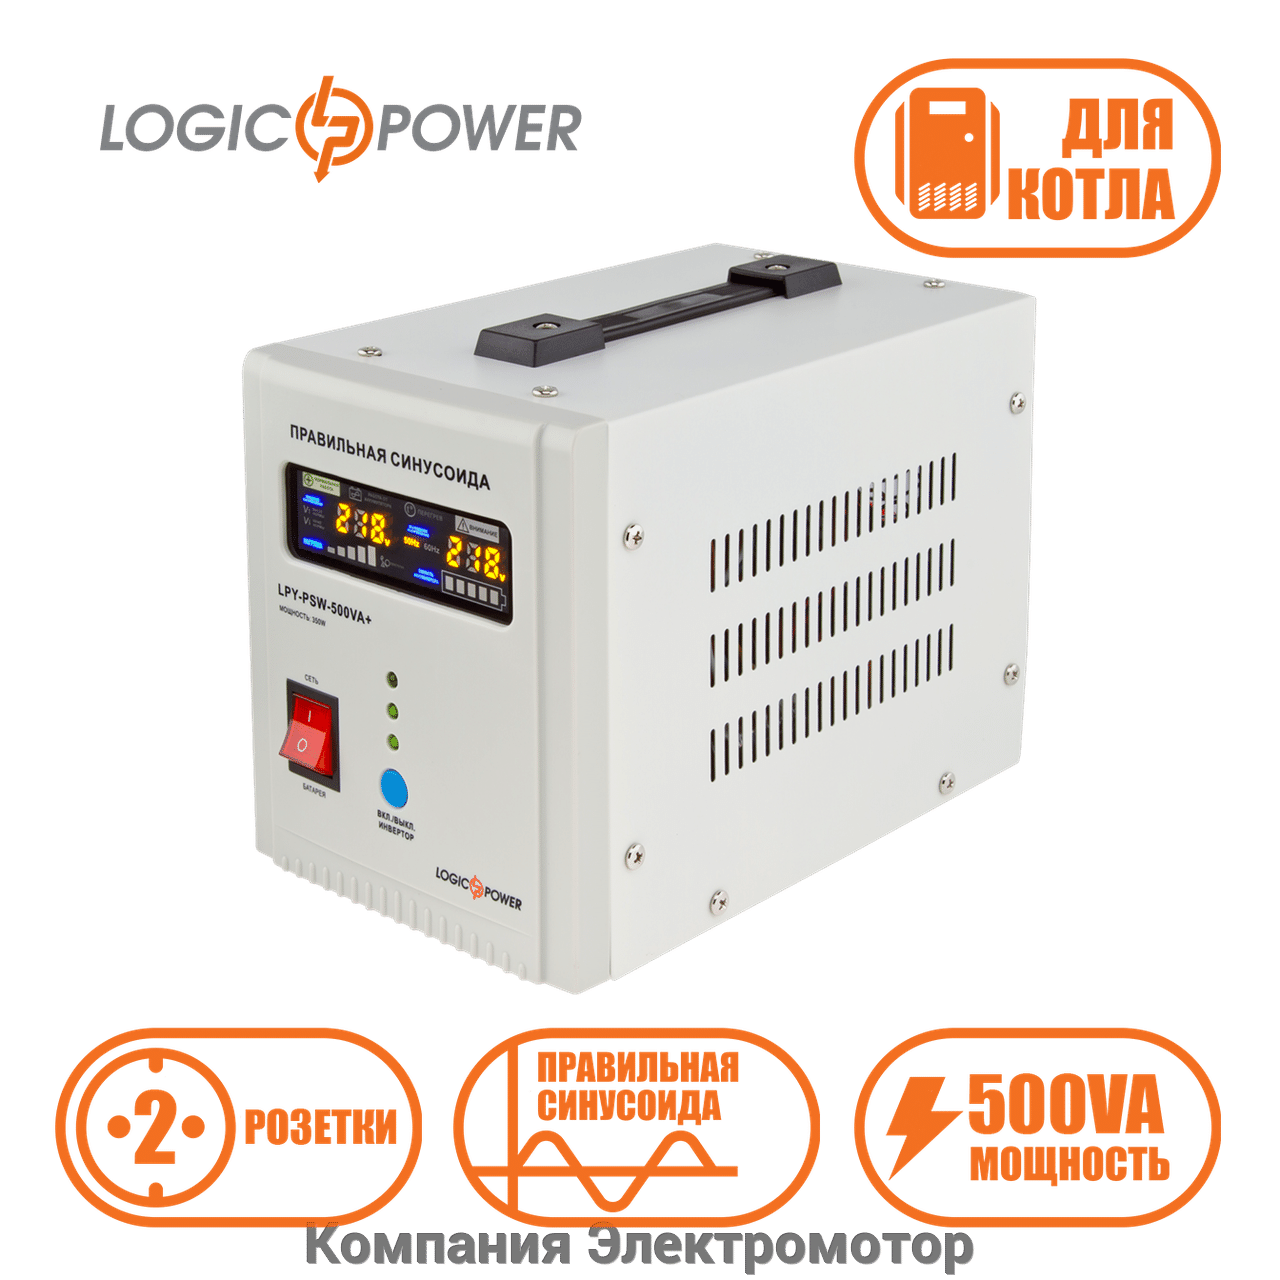 ИБП Logicpower LPY-PSW-500VA